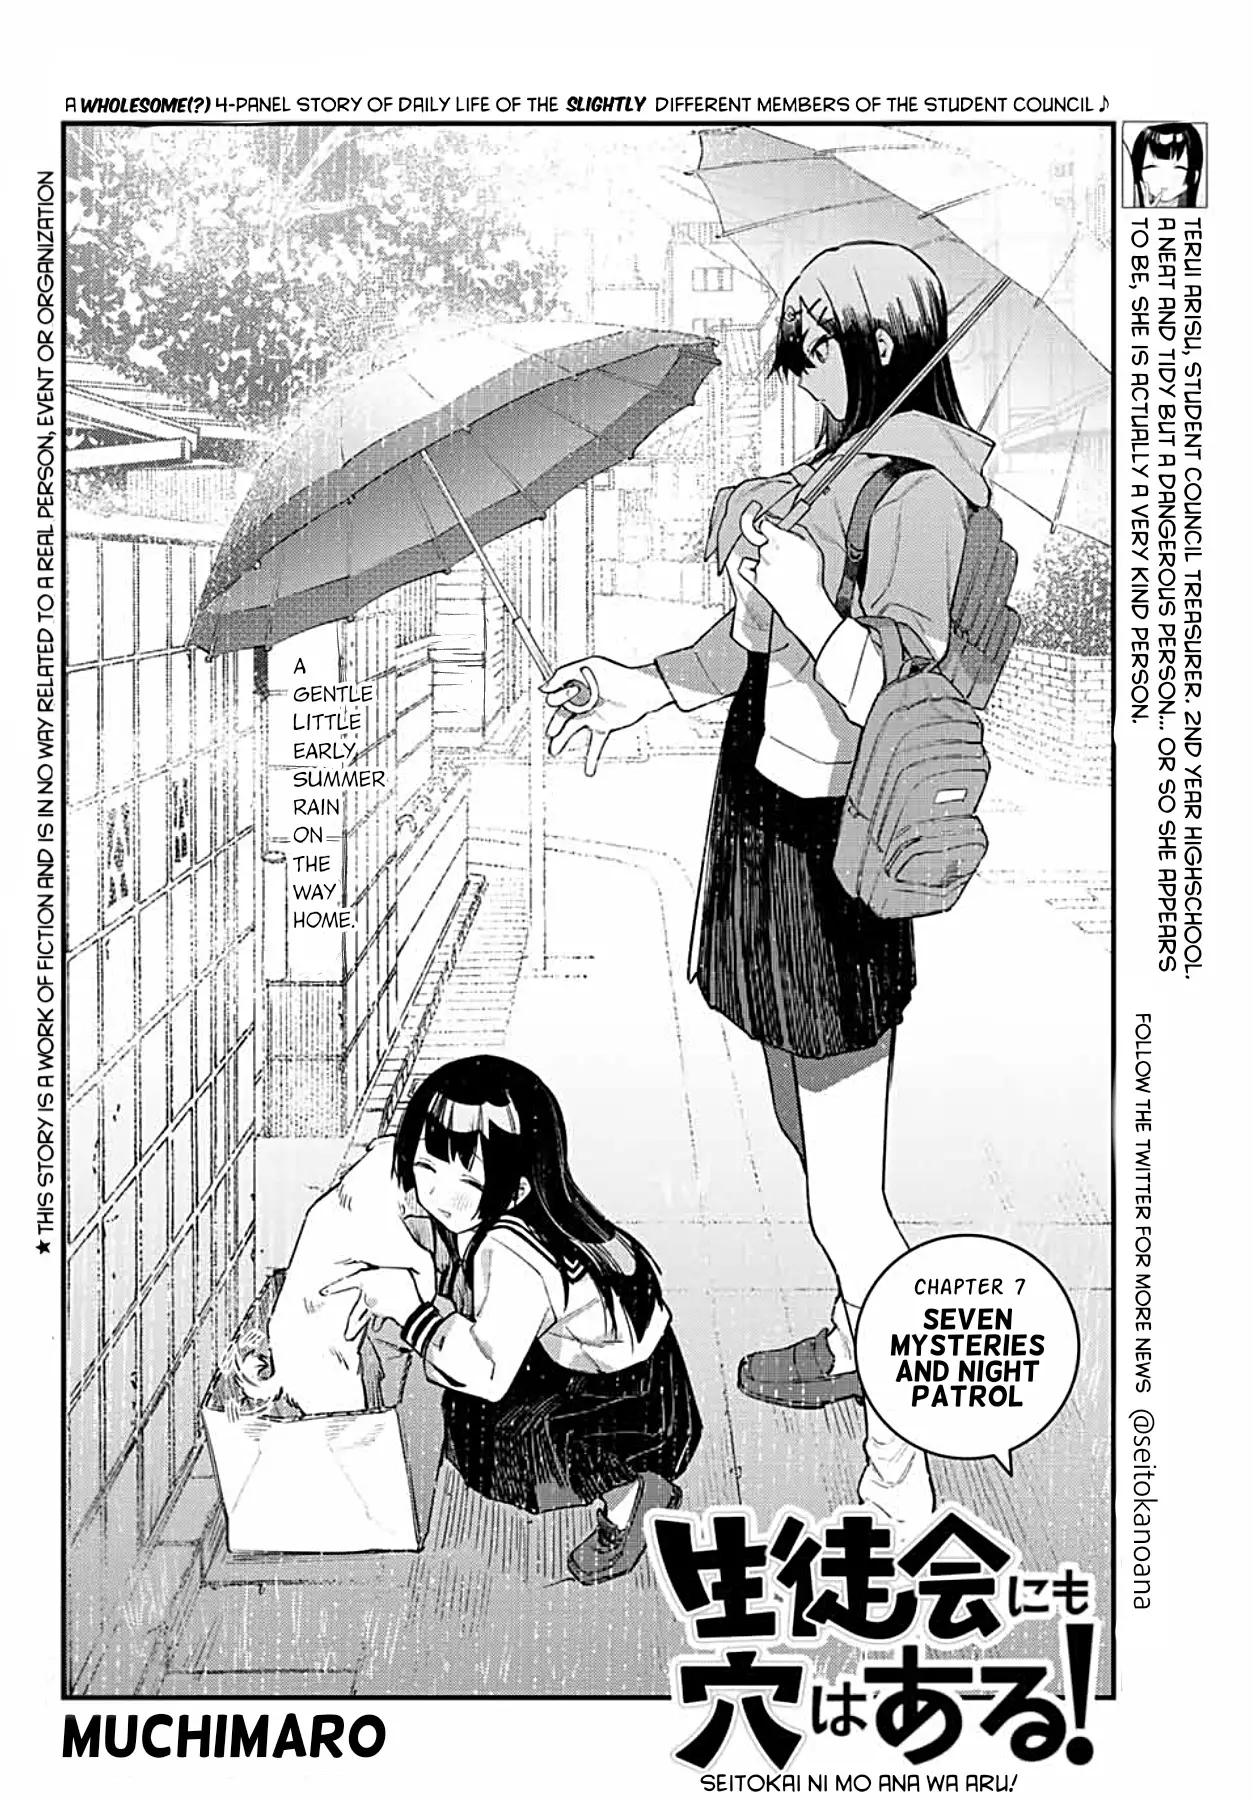 Seitokai Ni Mo Ana Wa Aru! - 7 page 2-76548563